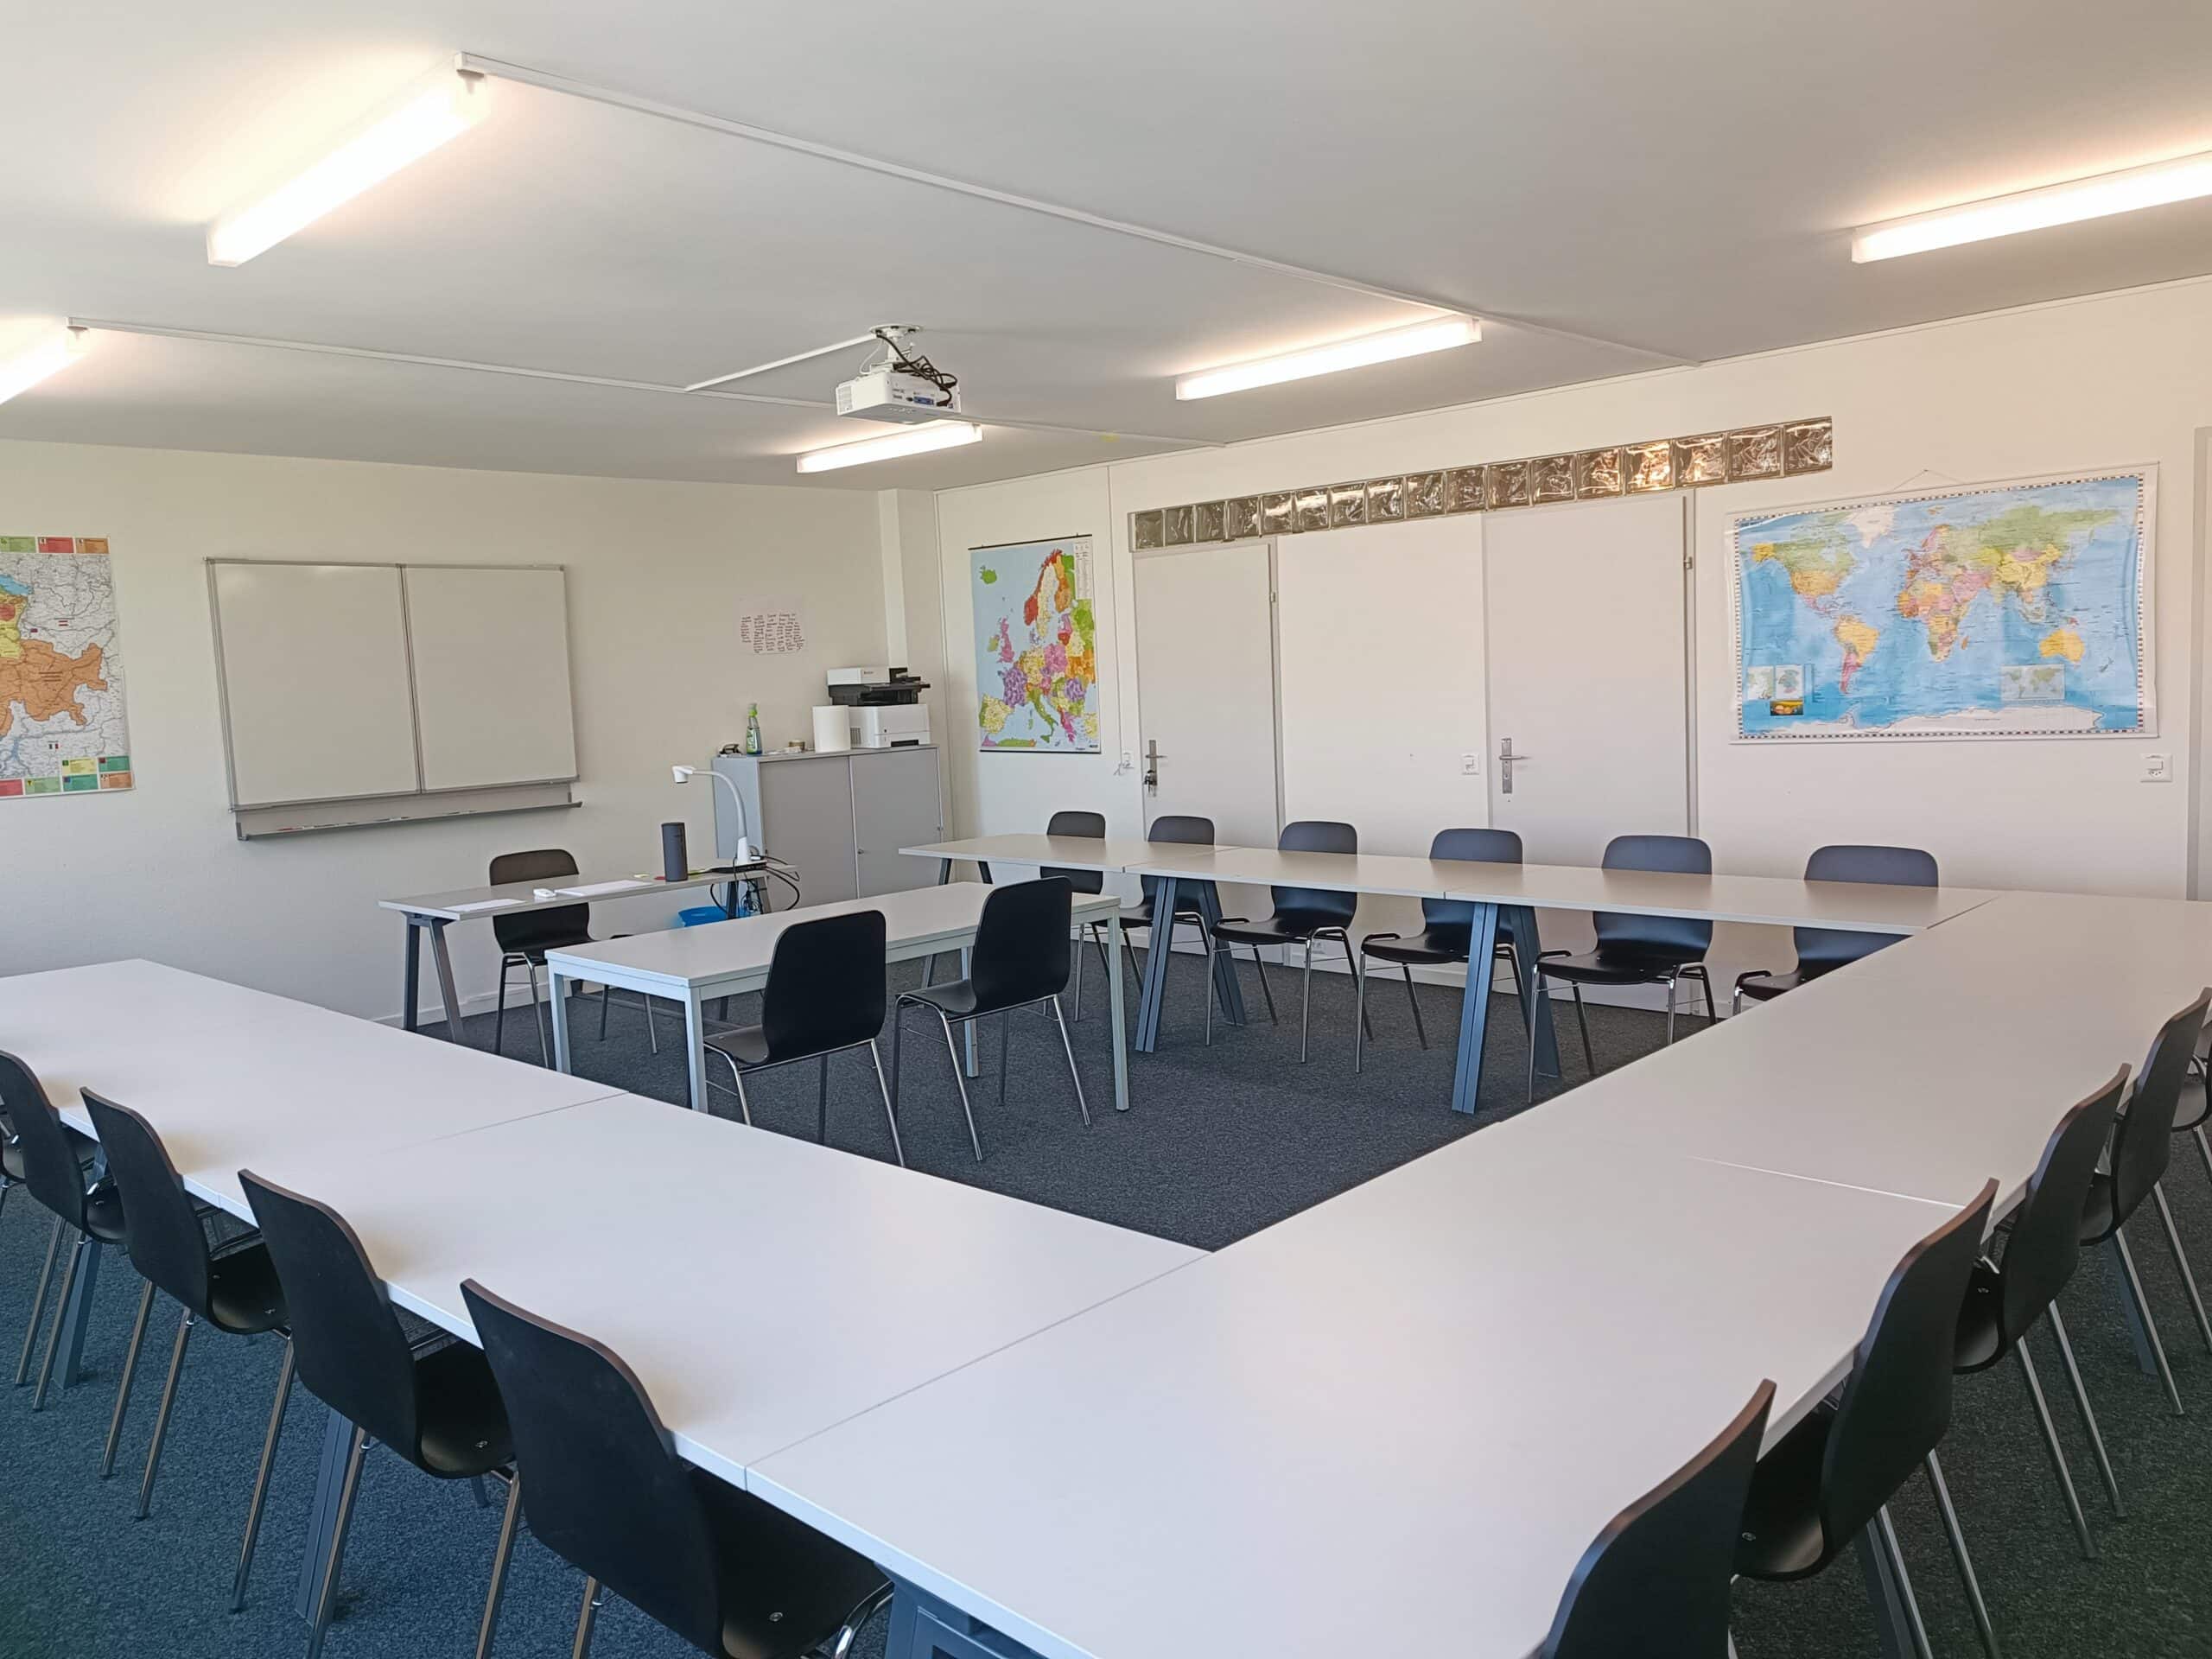 Sitzungsraum, Seminarraum, Unterrichtsraum, Schulraum, Klassenzimmer